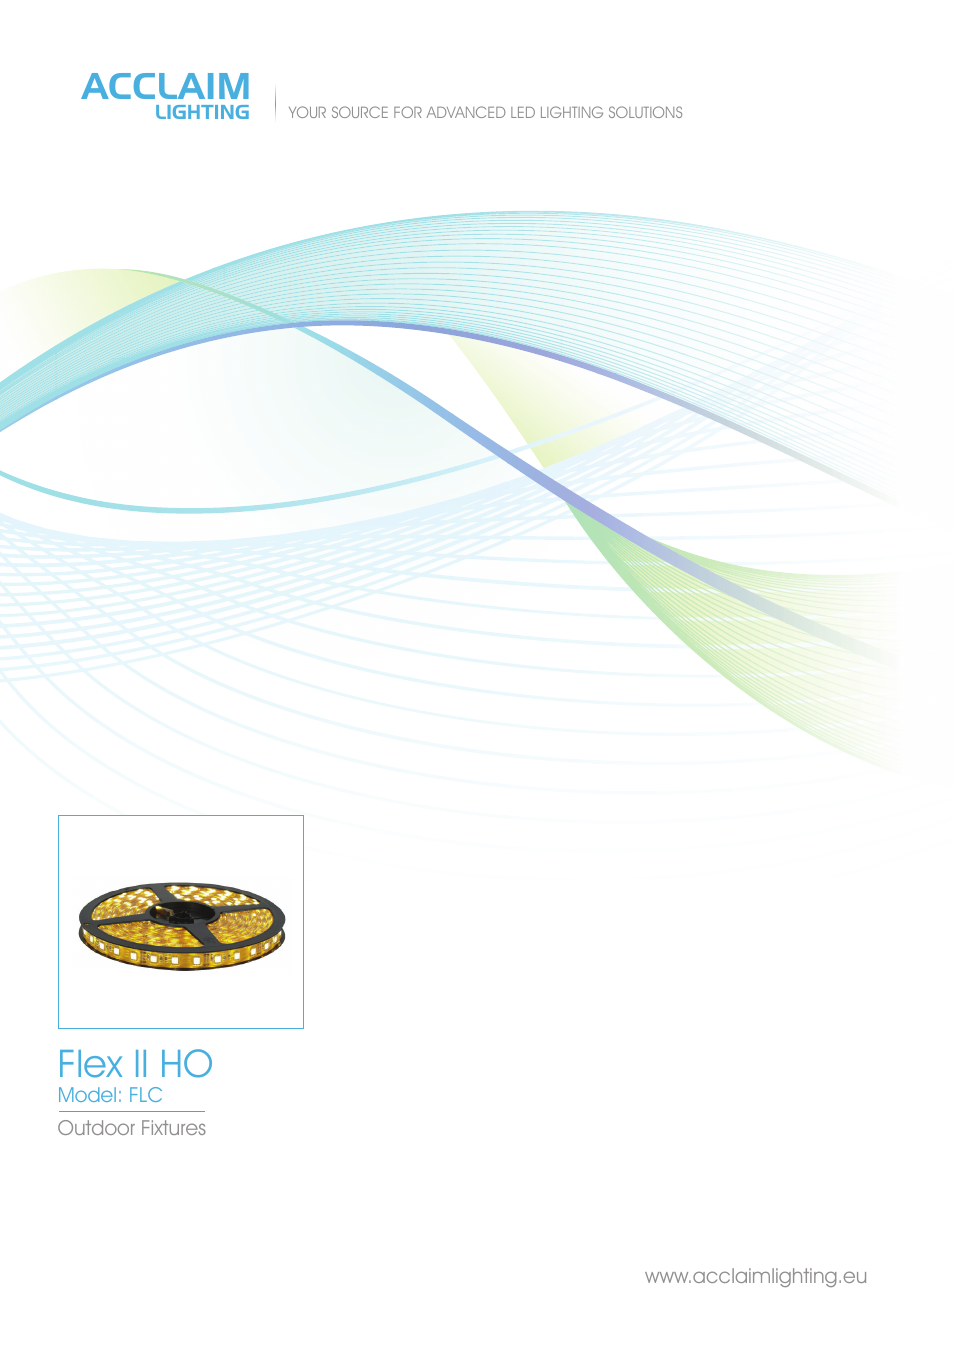 Flex ll HO (IP68)